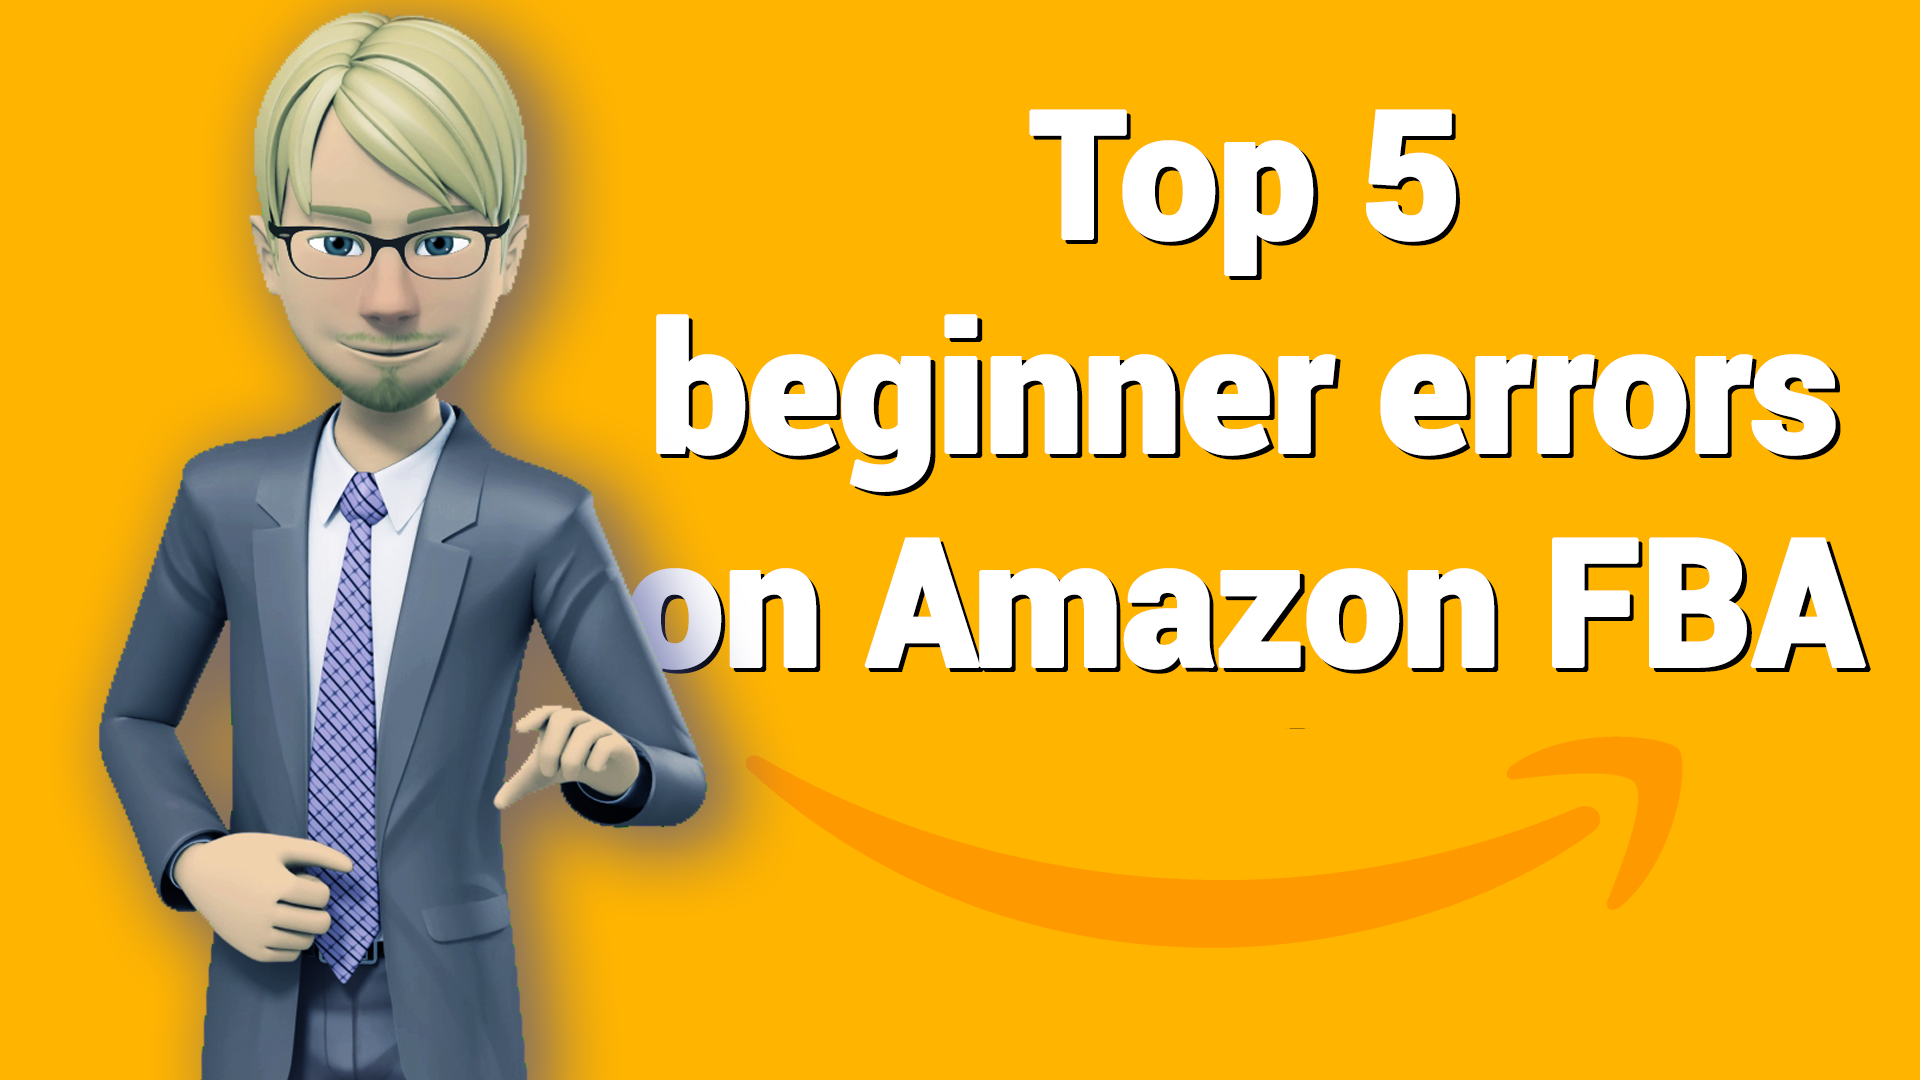 Top 5 beginner errors on Amazon FBA, Amazon Seller Tools